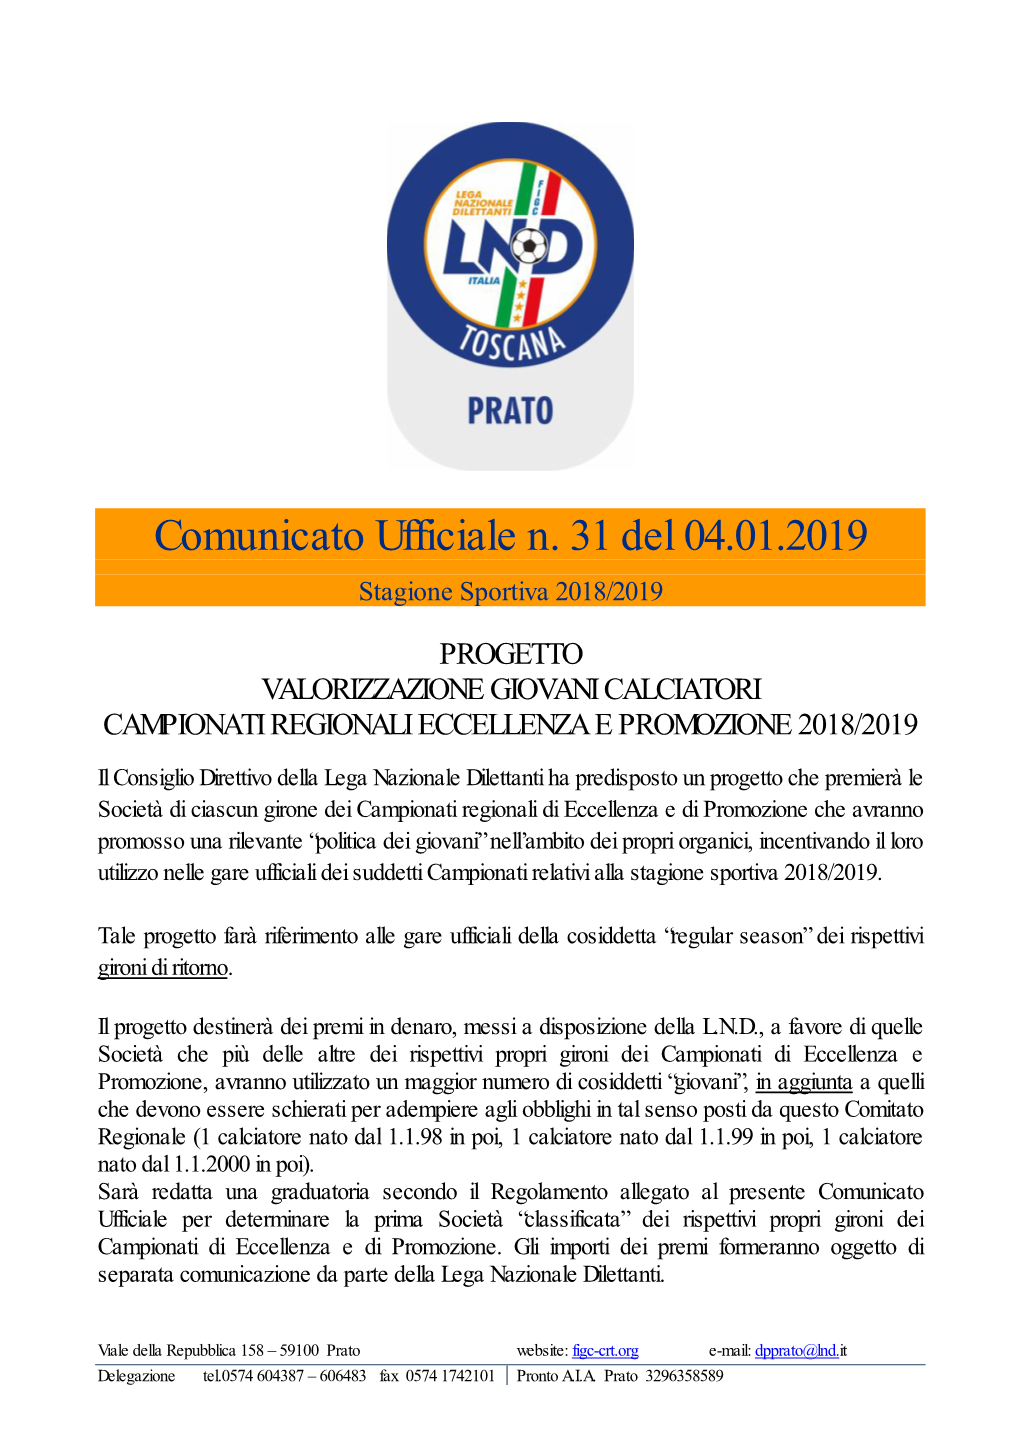 Comunicato Ufficiale N. 31 Del 04.01.2019 Stagione Sportiva 2018/2019